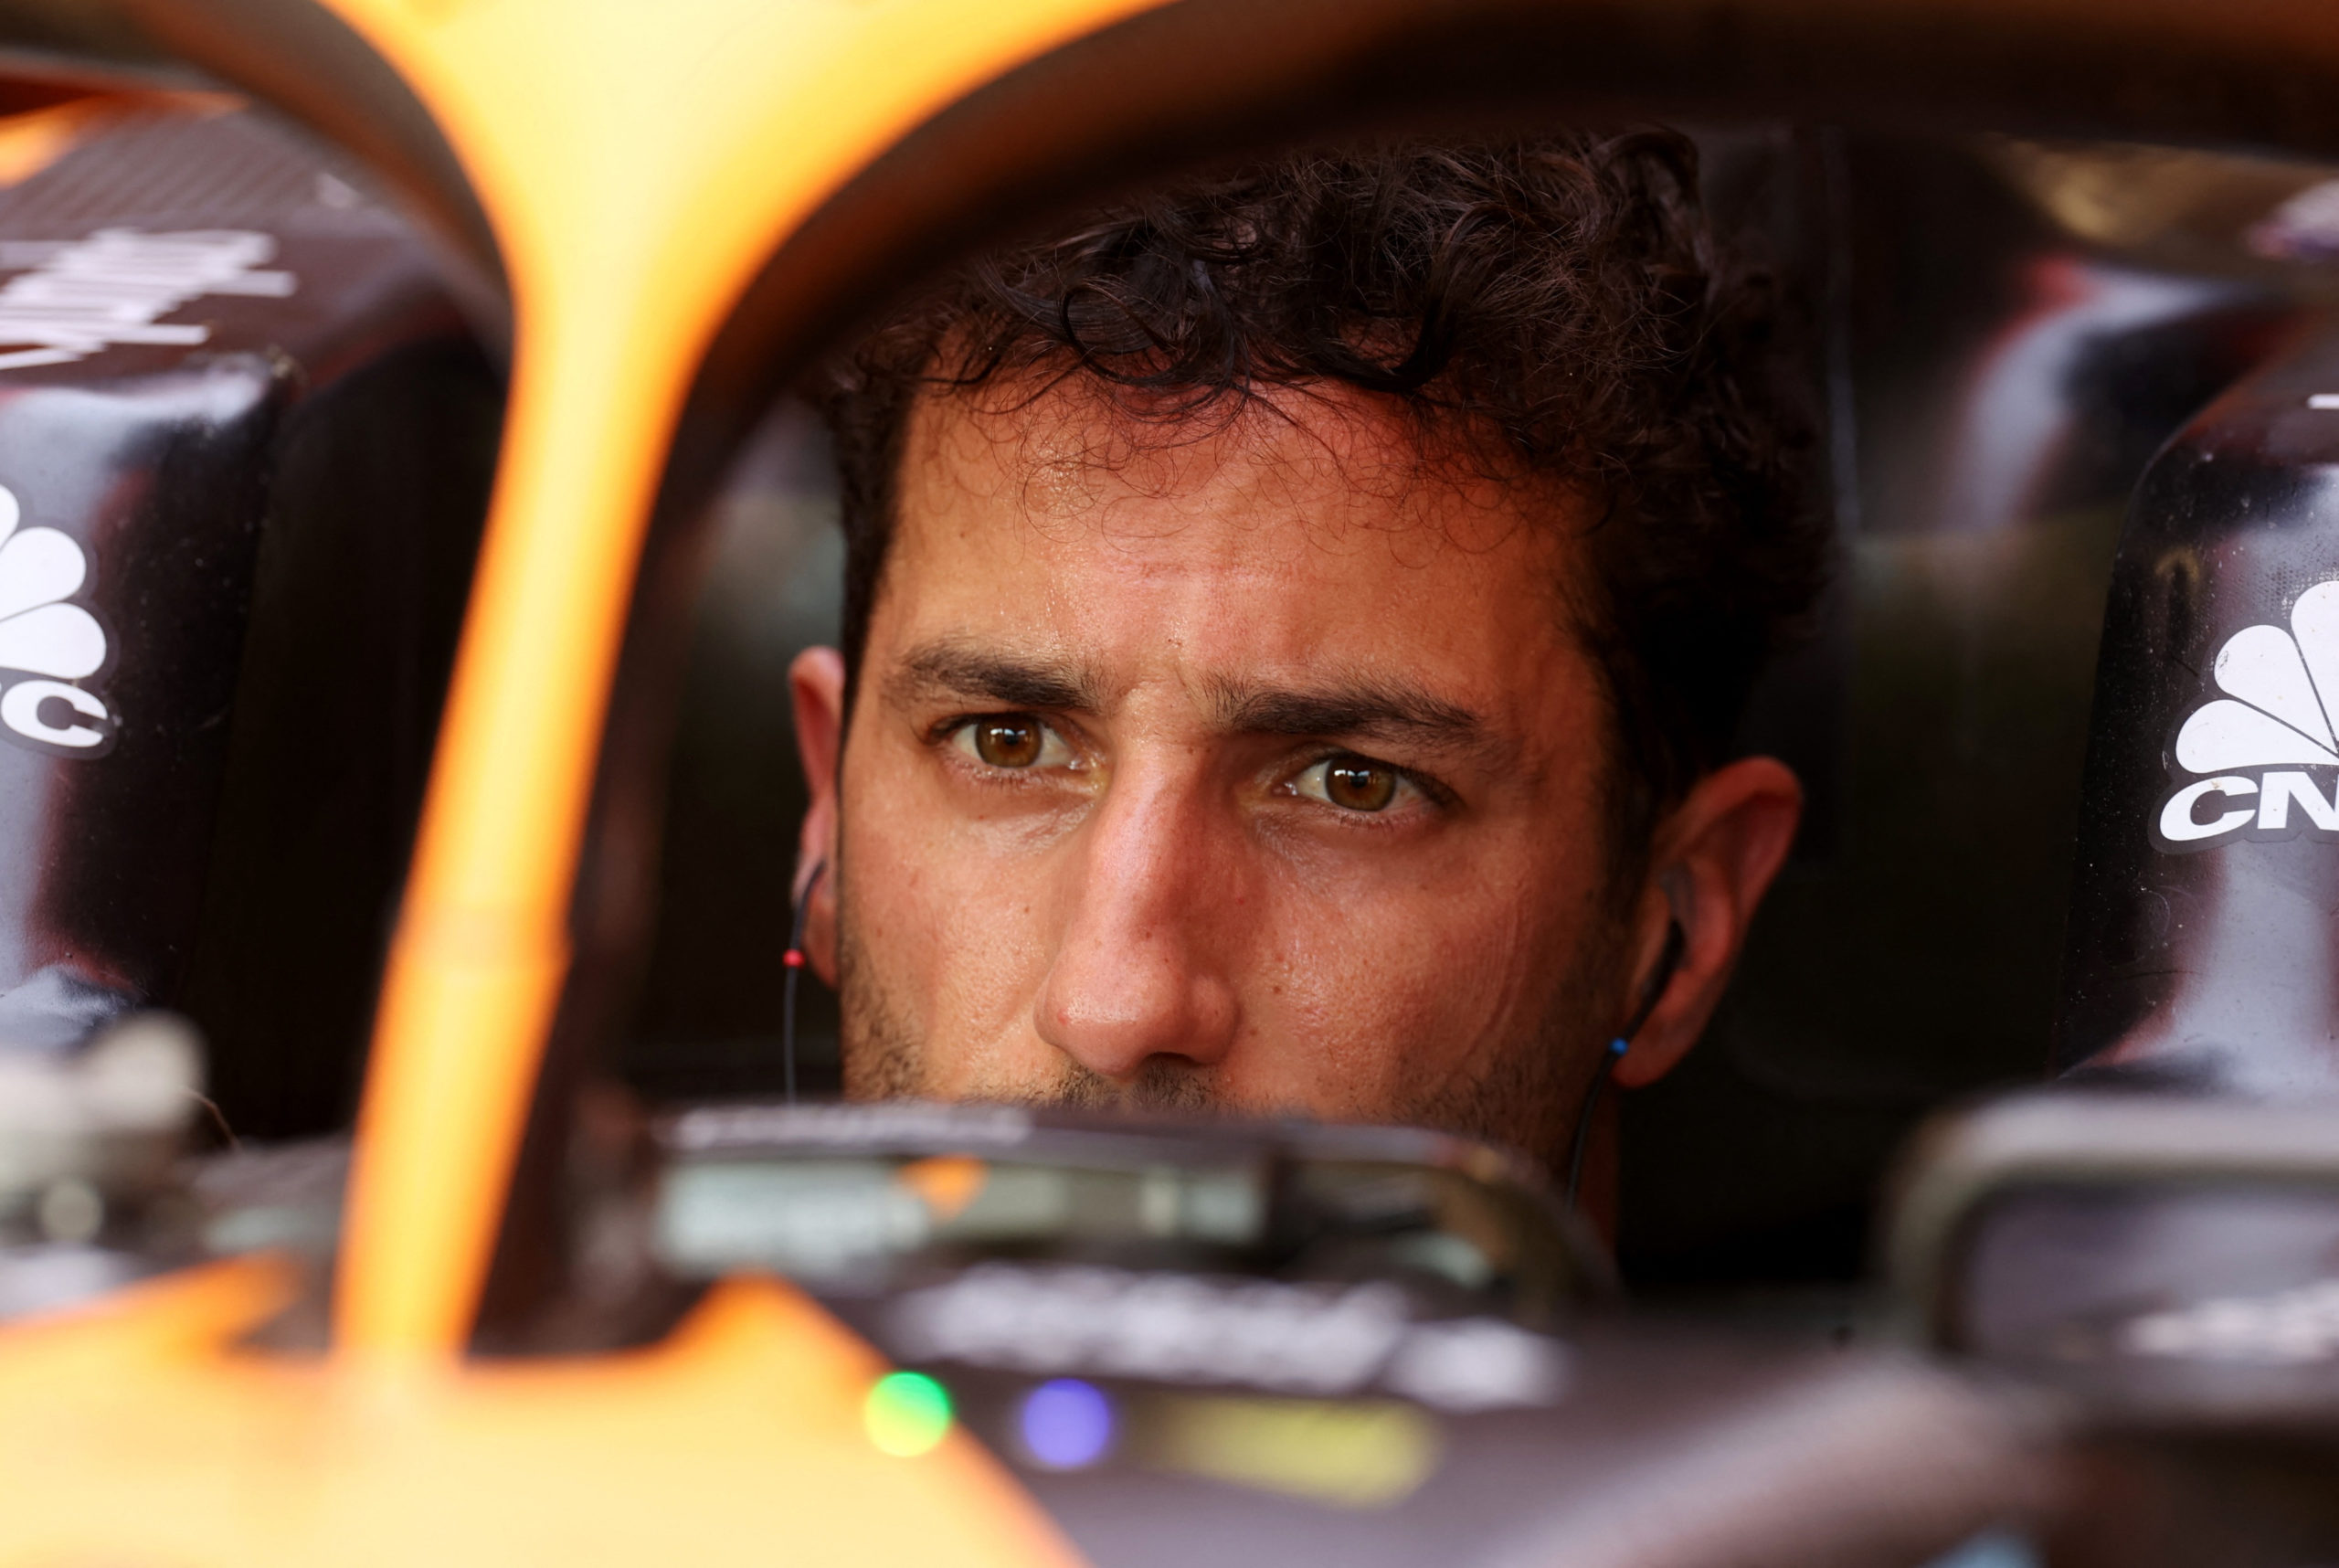 Ricciardo during practice